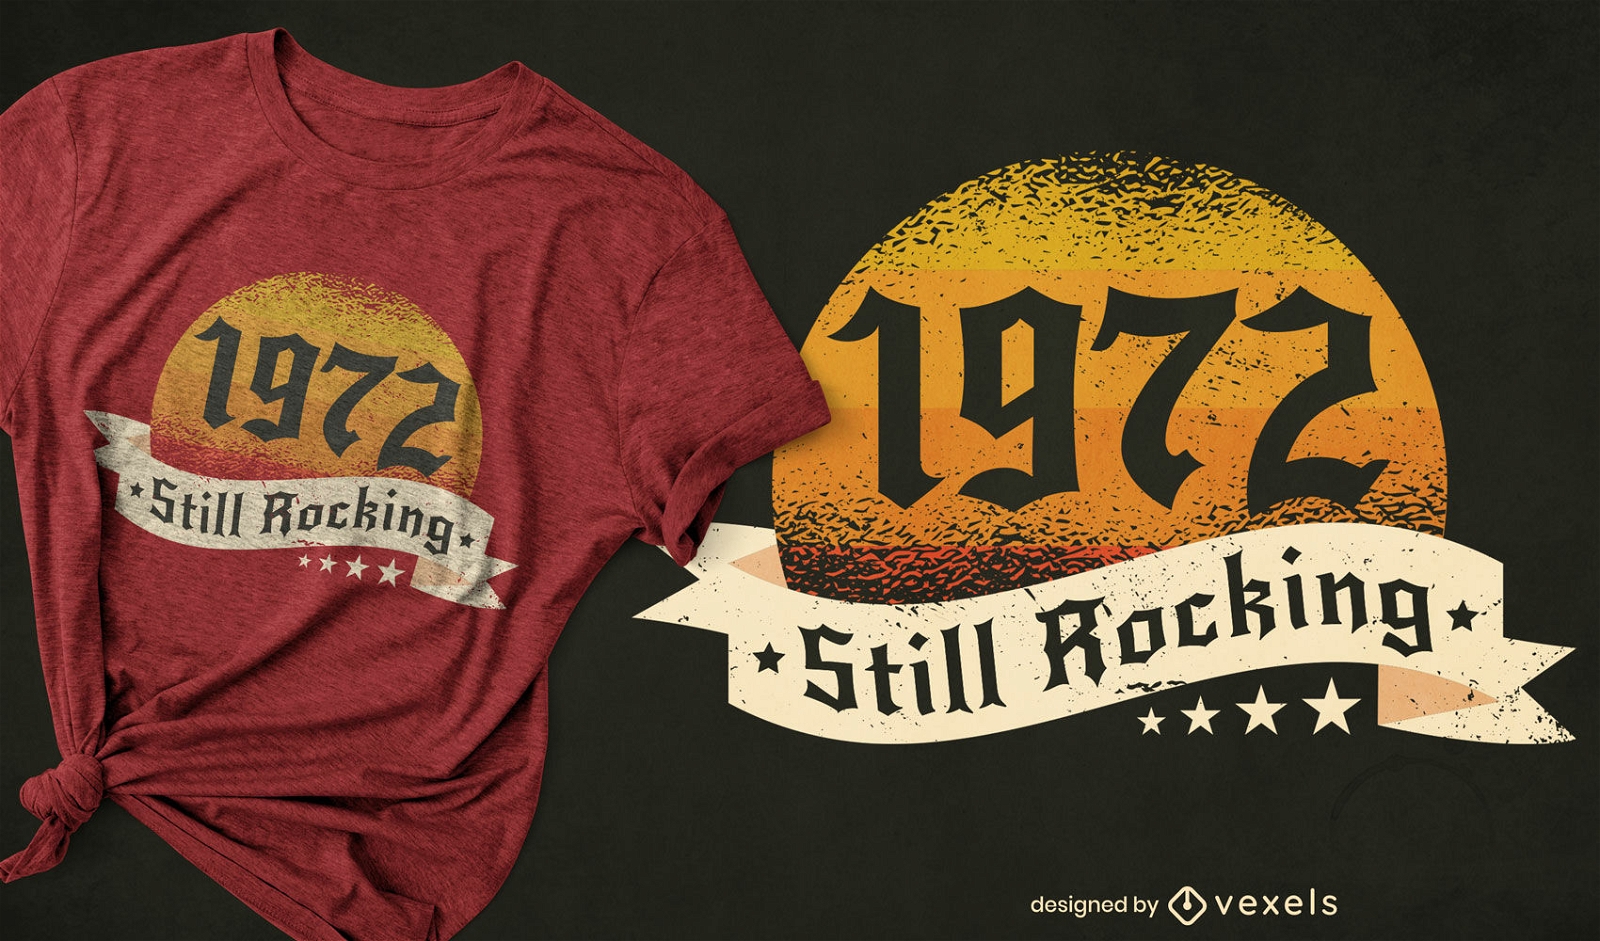 1972 ainda est? em alta no design de camisetas